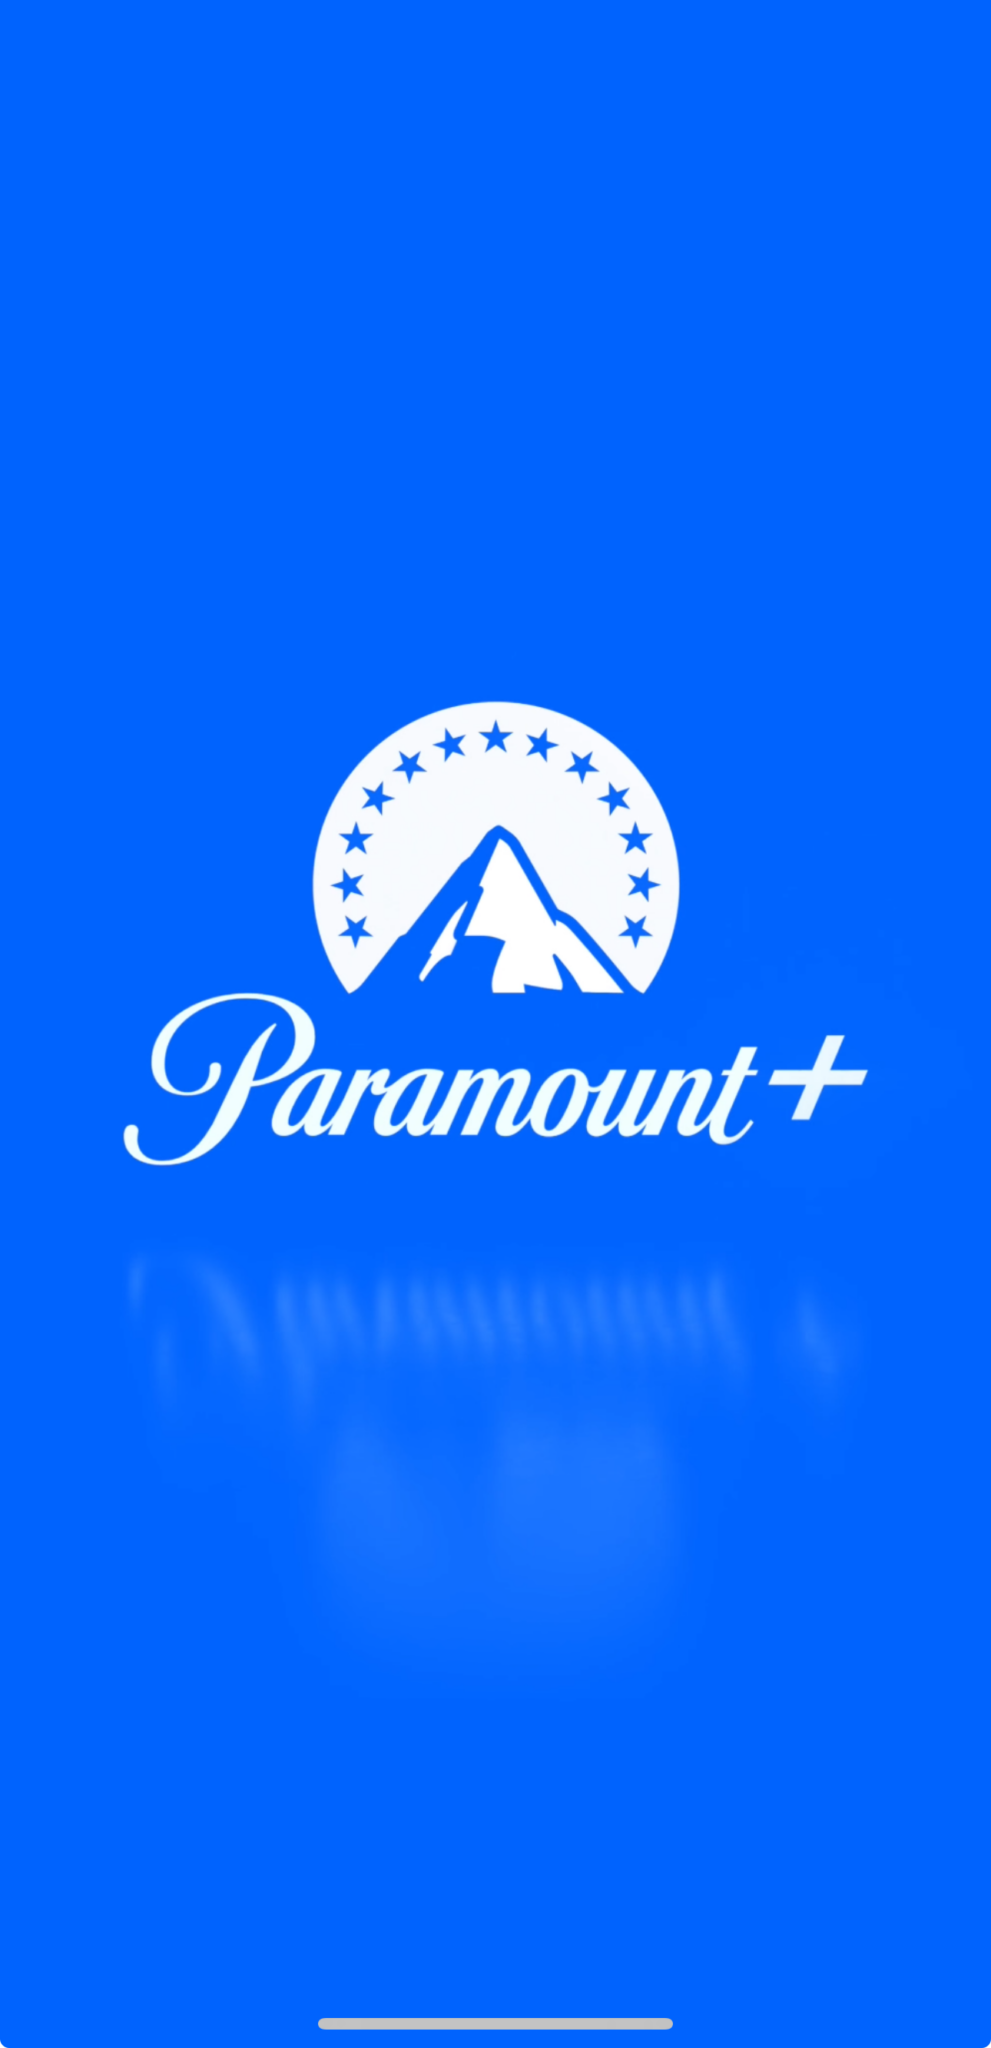 Paramount+,estrenos,series,peliculas,accion,comedia,terror